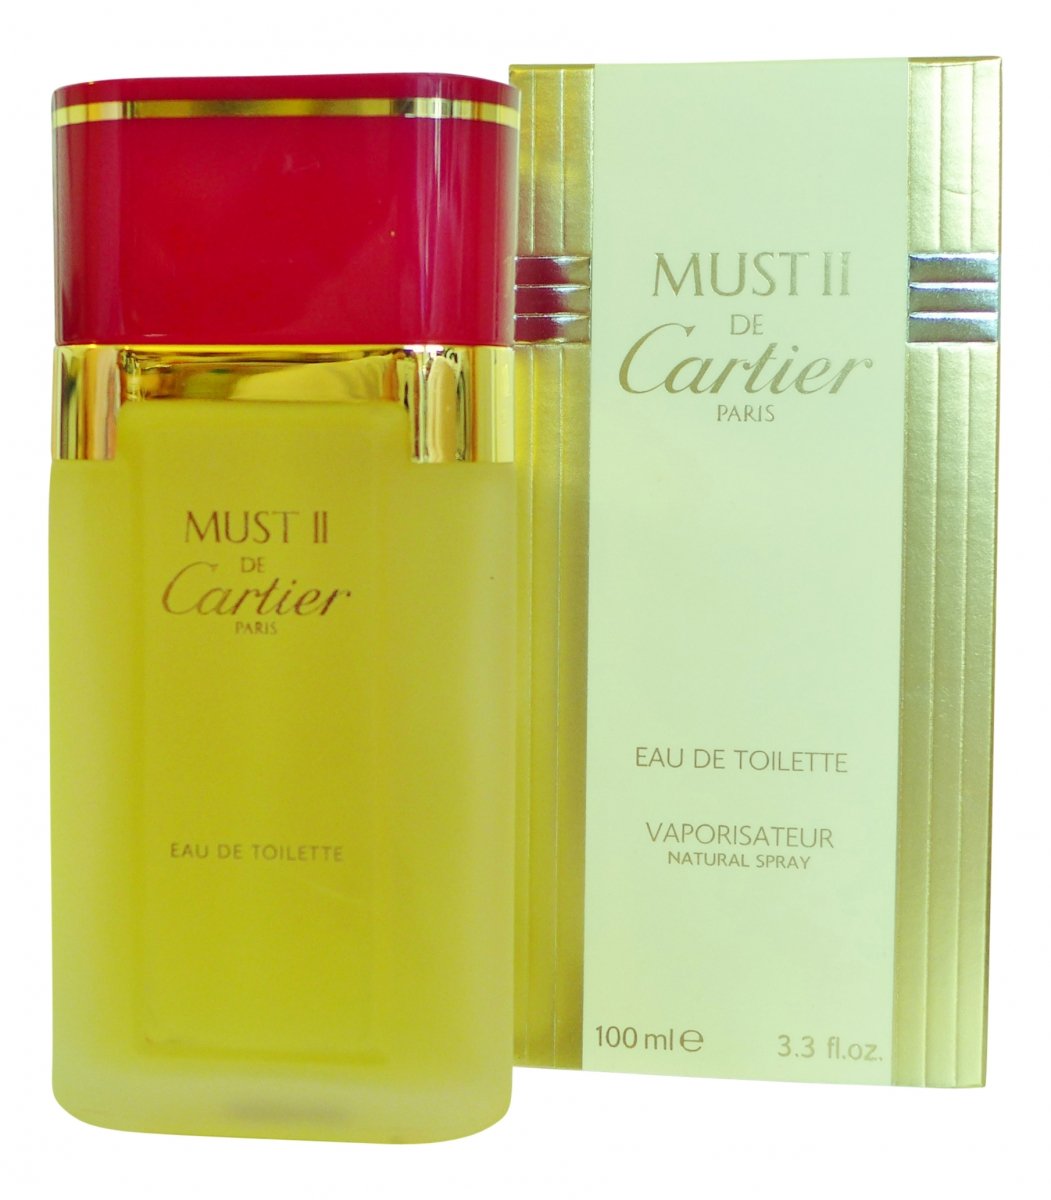 Must II de Cartier